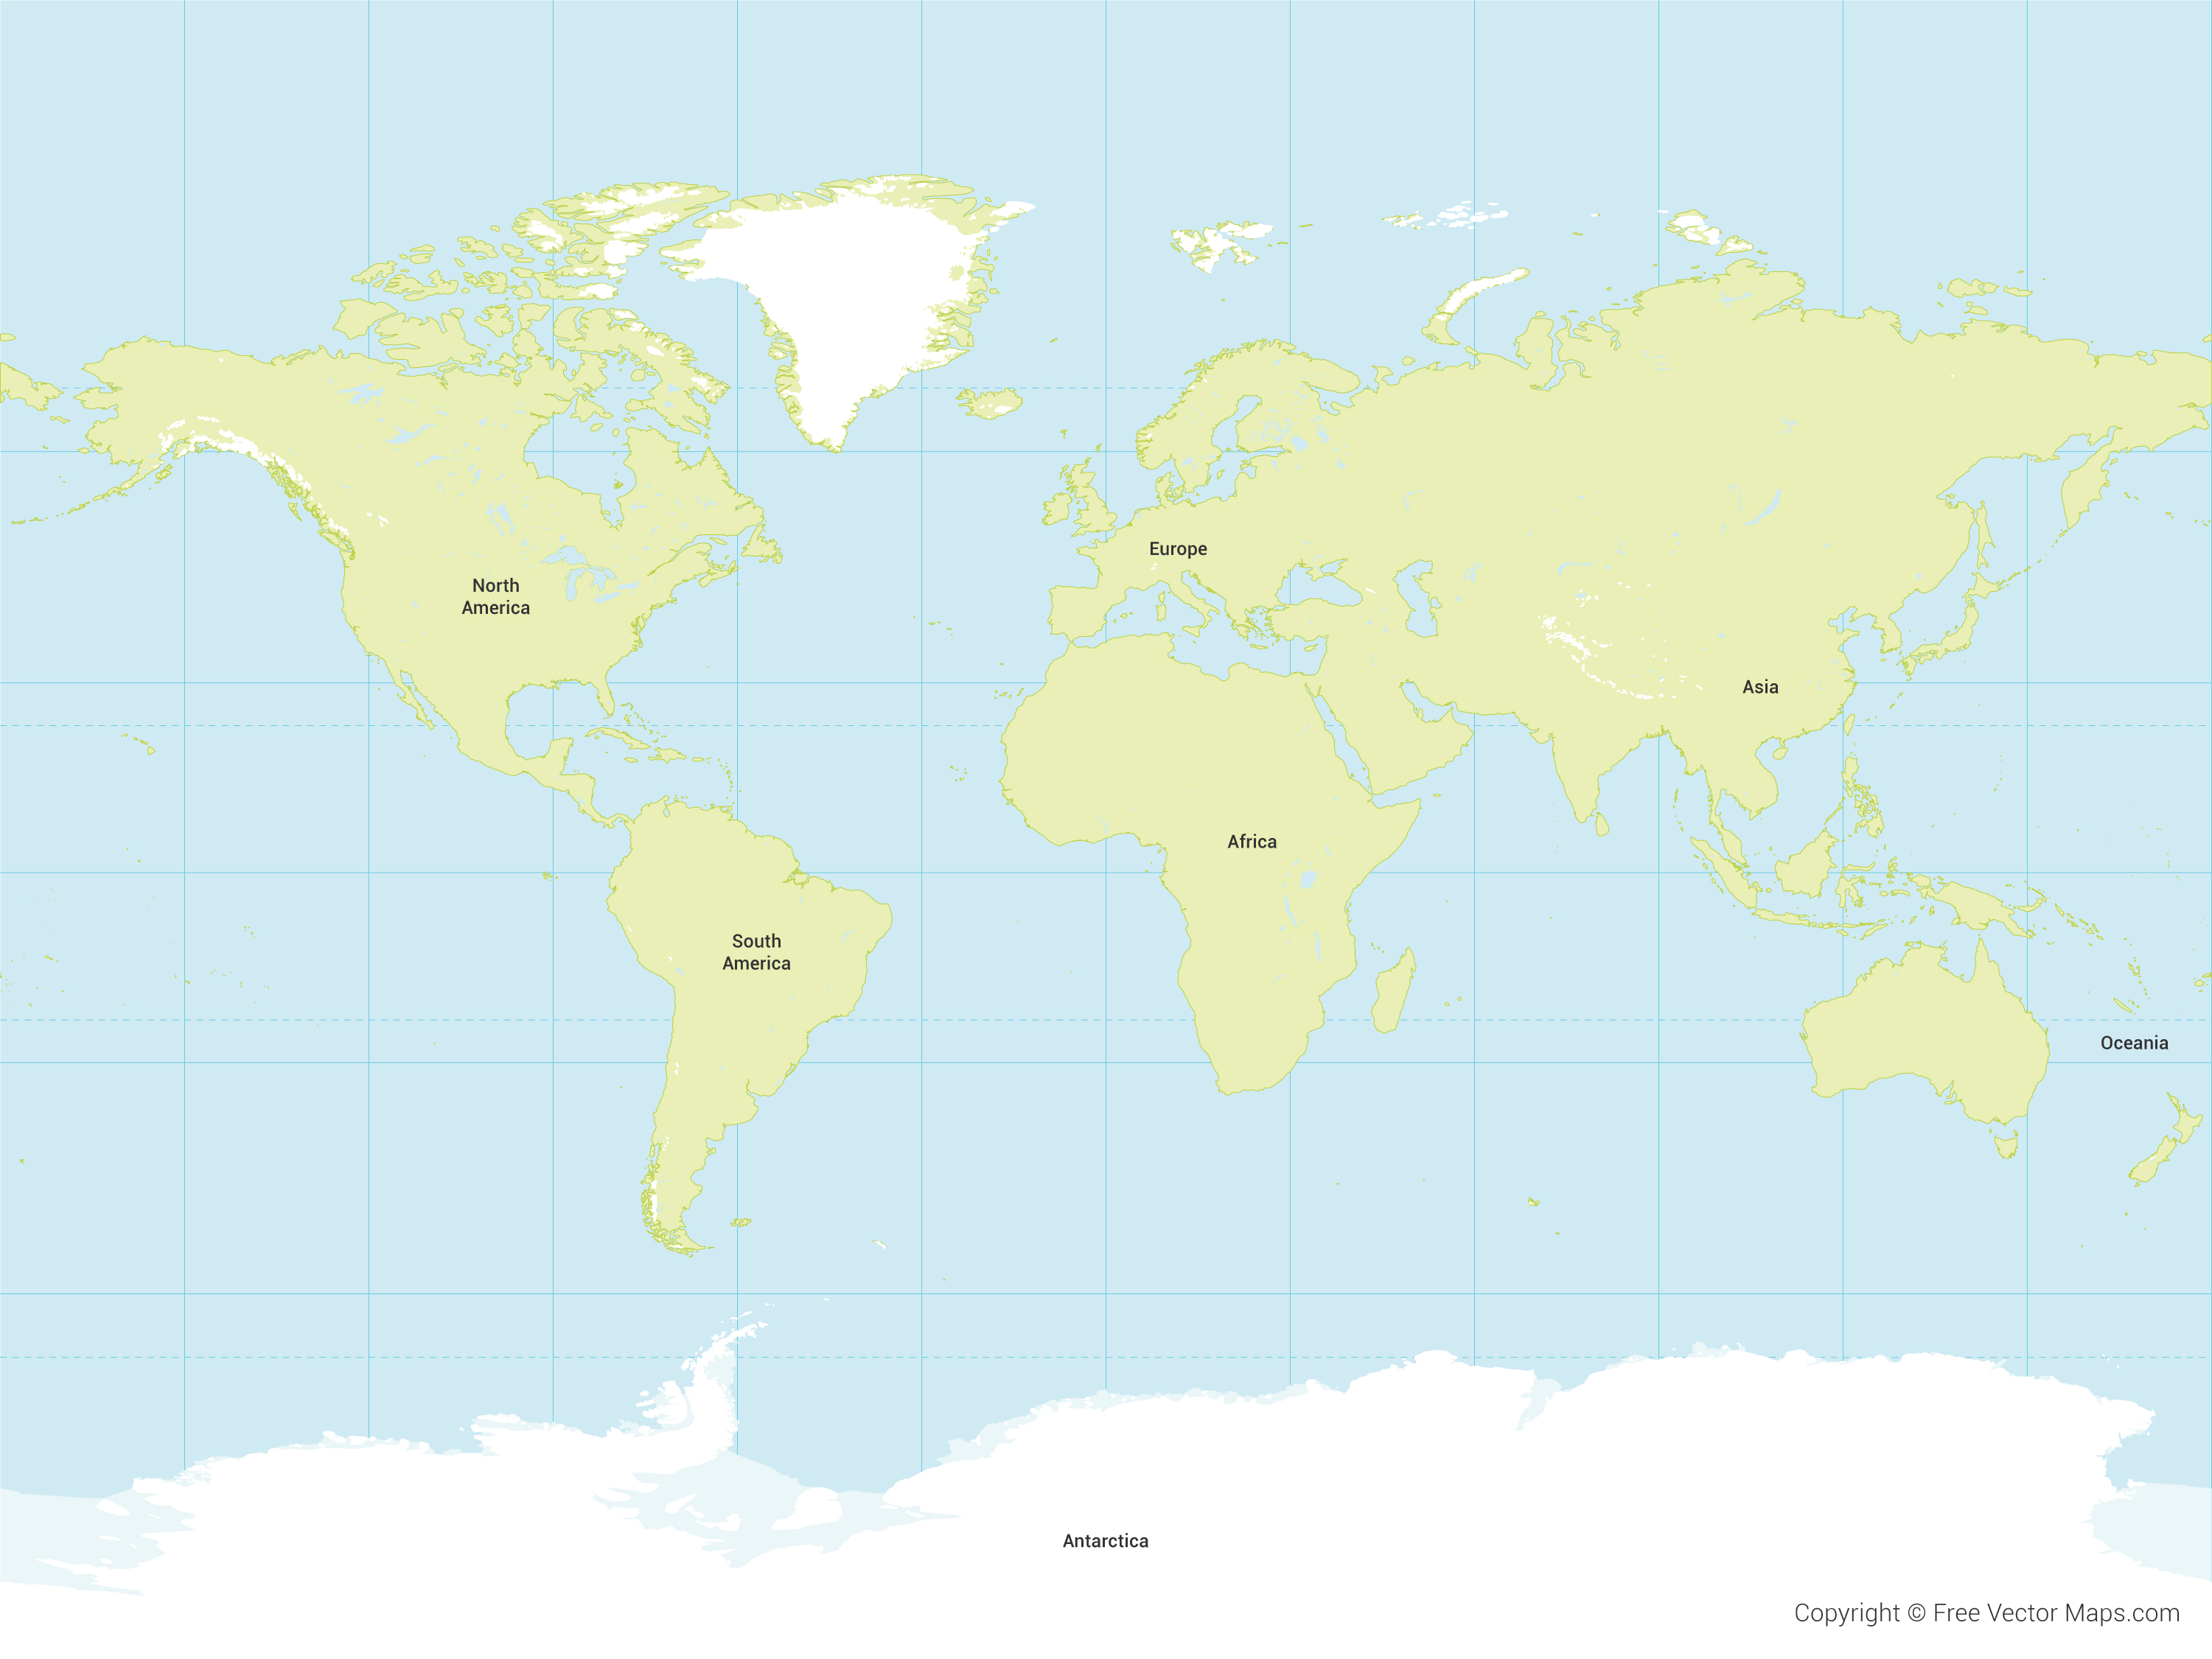 Gratis Kaart de Wereld, Wereld kaart